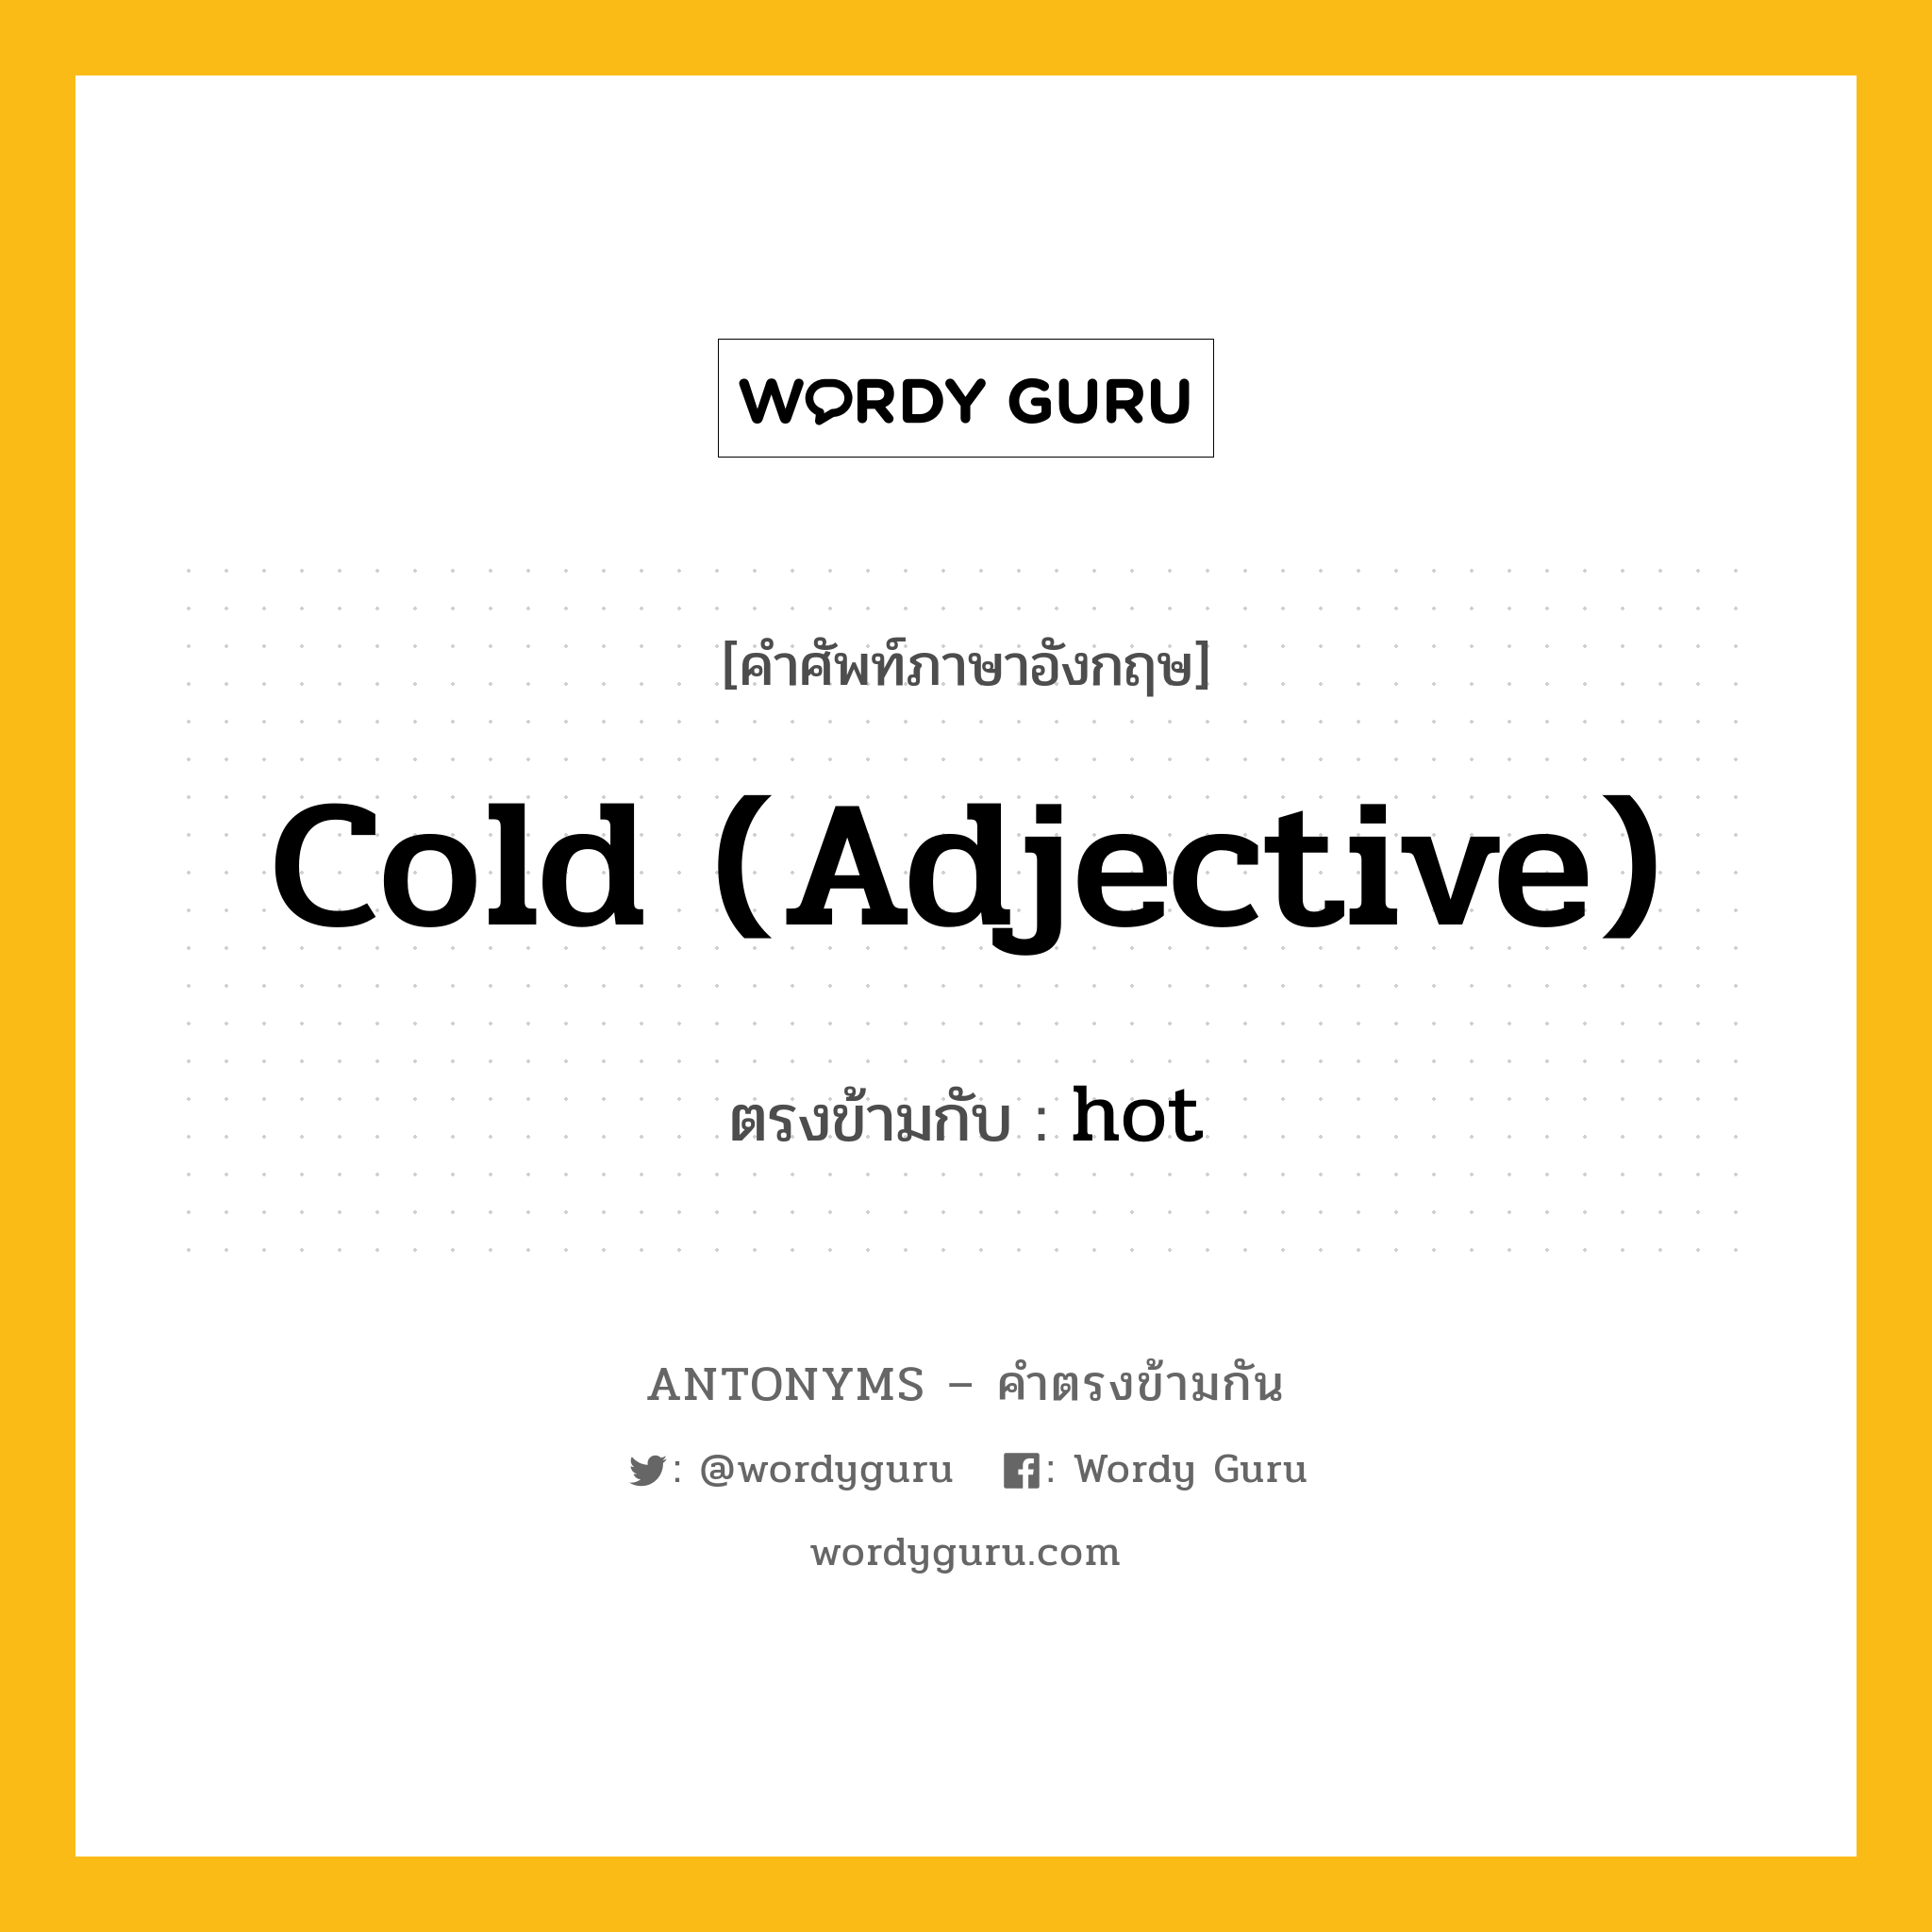 cold (adjective) เป็นคำตรงข้ามกับคำไหนบ้าง?, คำศัพท์ภาษาอังกฤษ cold (adjective) ตรงข้ามกับ hot หมวด hot